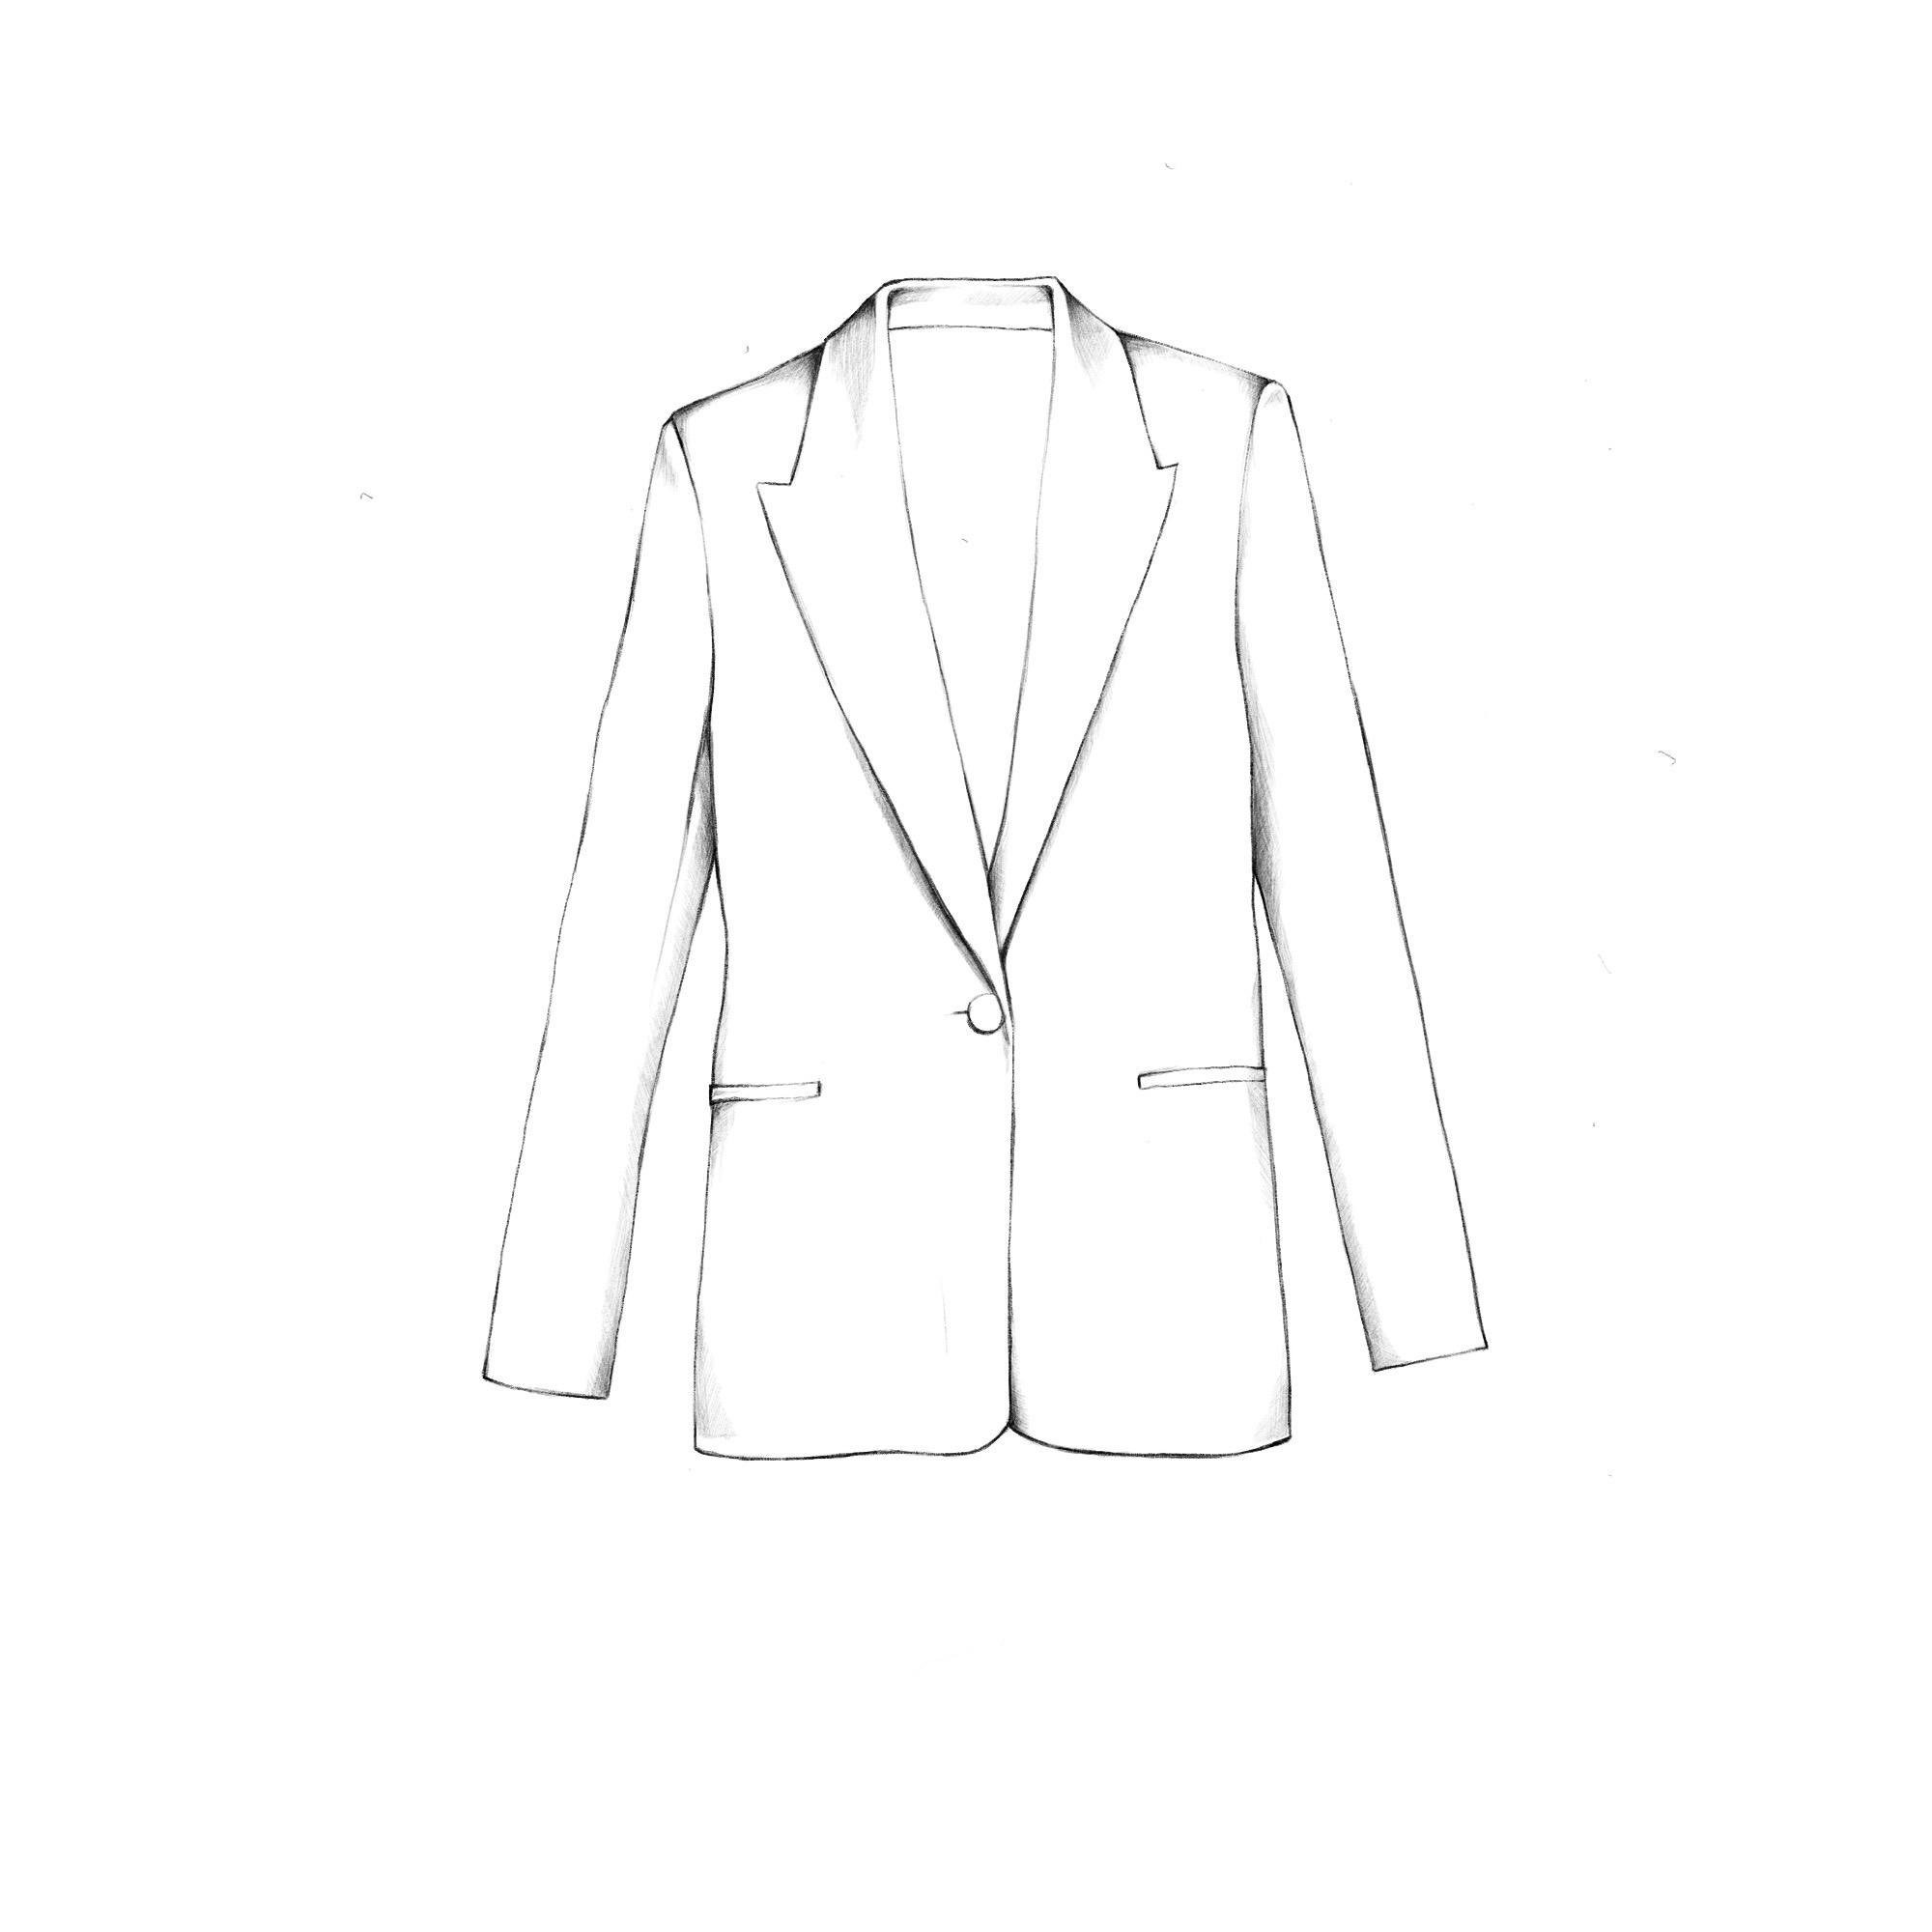 Max Mara Blazer - White Jackets, Clothing - MMA139367 | The RealReal